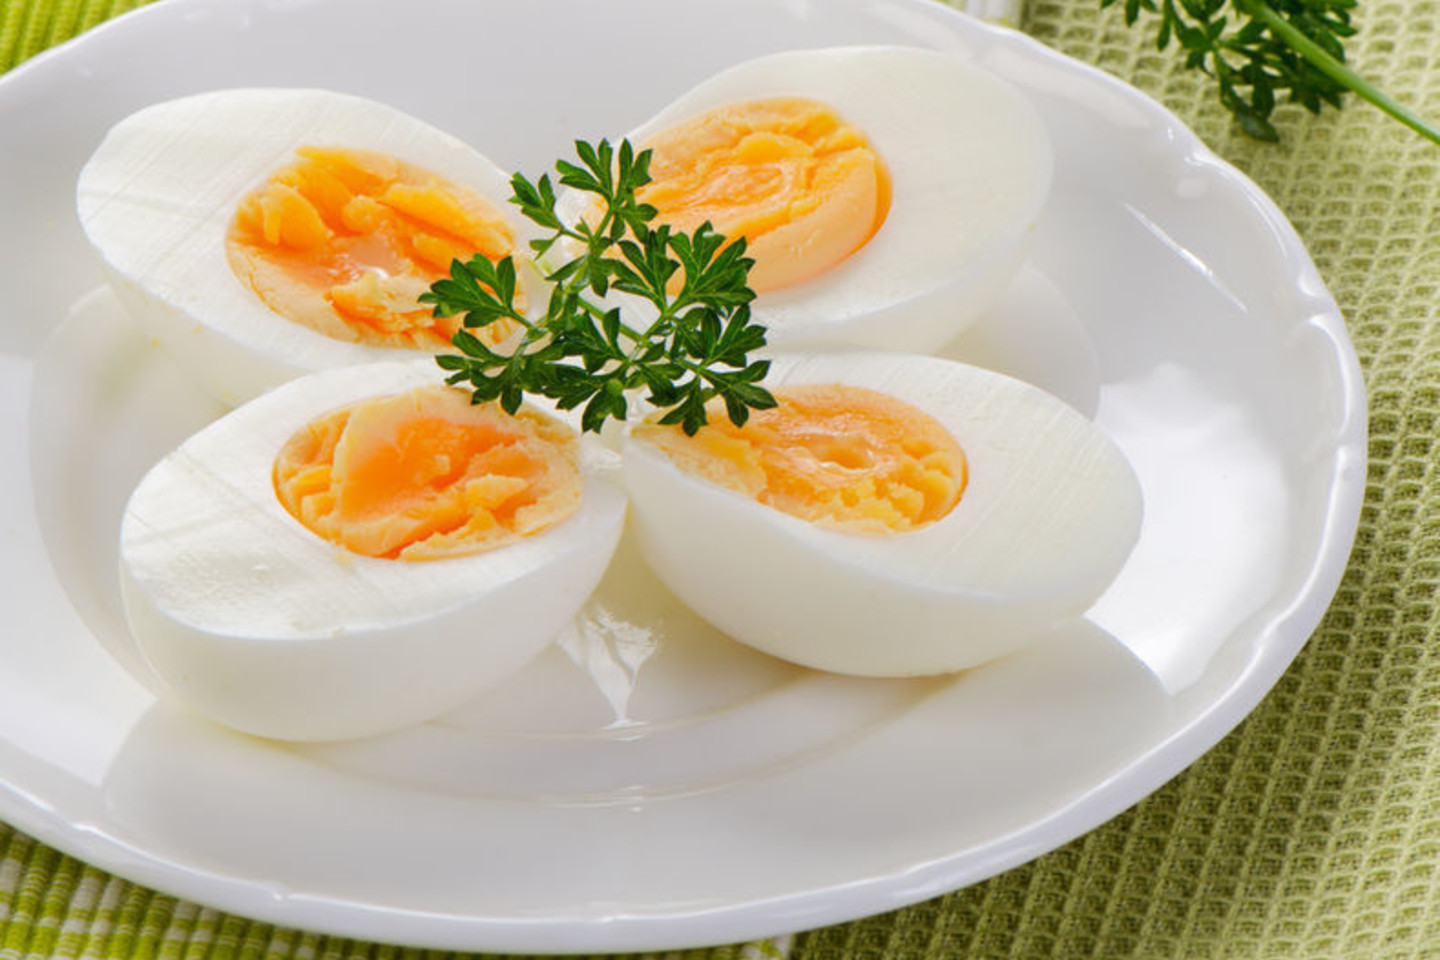 Geriausiai skrandis virškina kiaušinį, kurio ir baltymas, ir trynys yra gerai išvirę.<br>123rf nuotr.